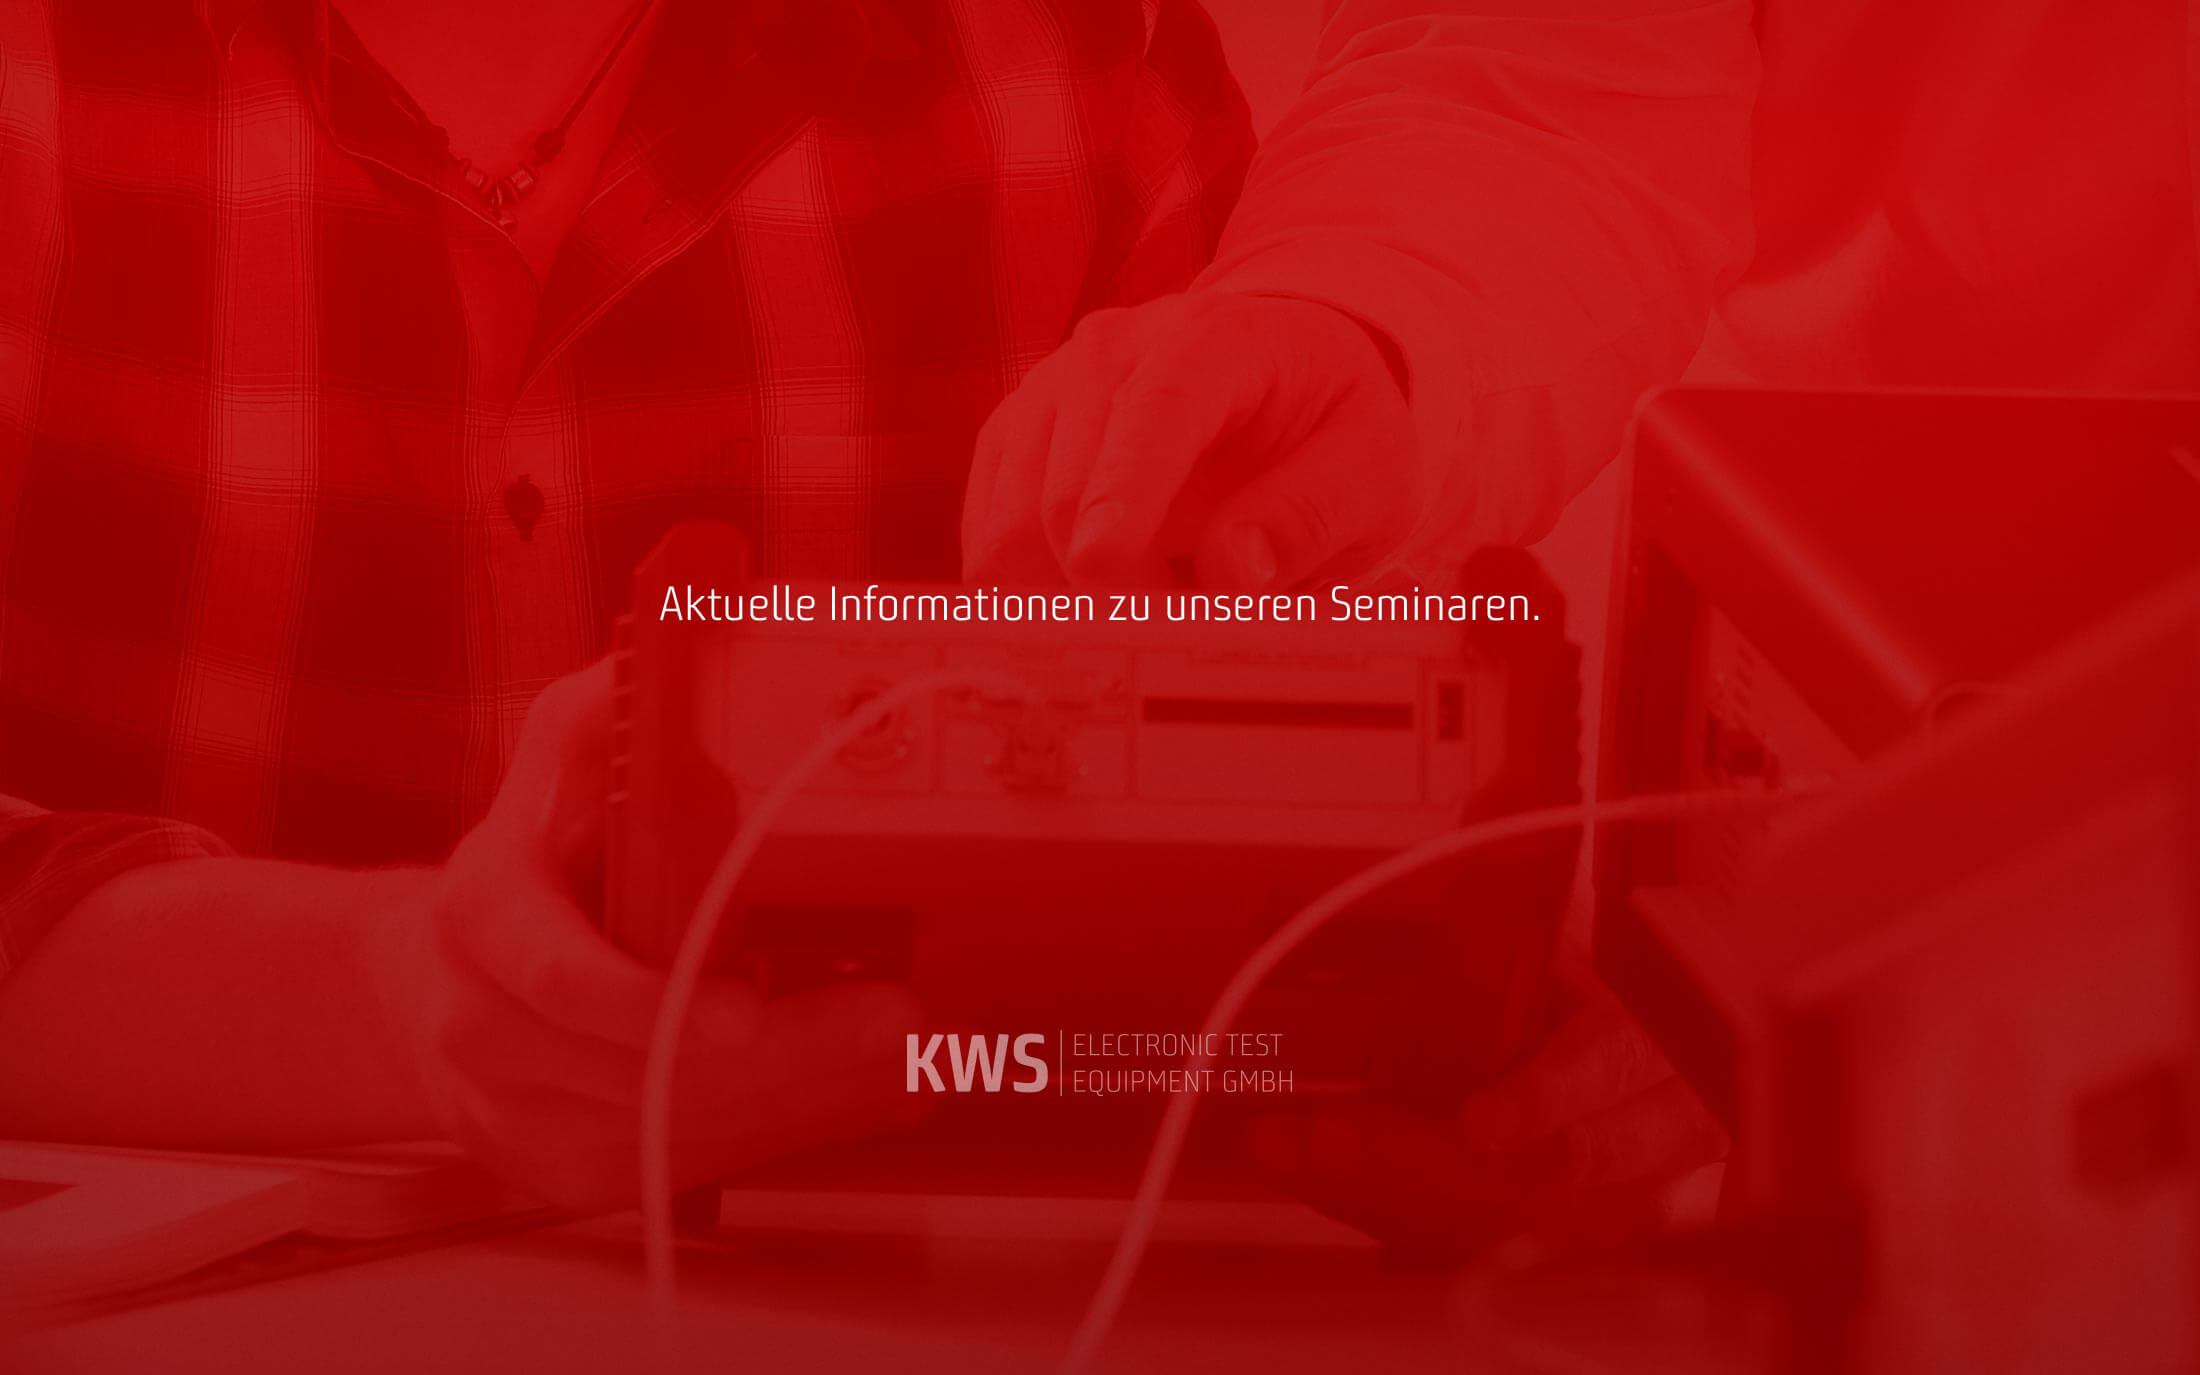 KWS Electronic News 2020: Aktuelle Infos zu unseren Seminaren